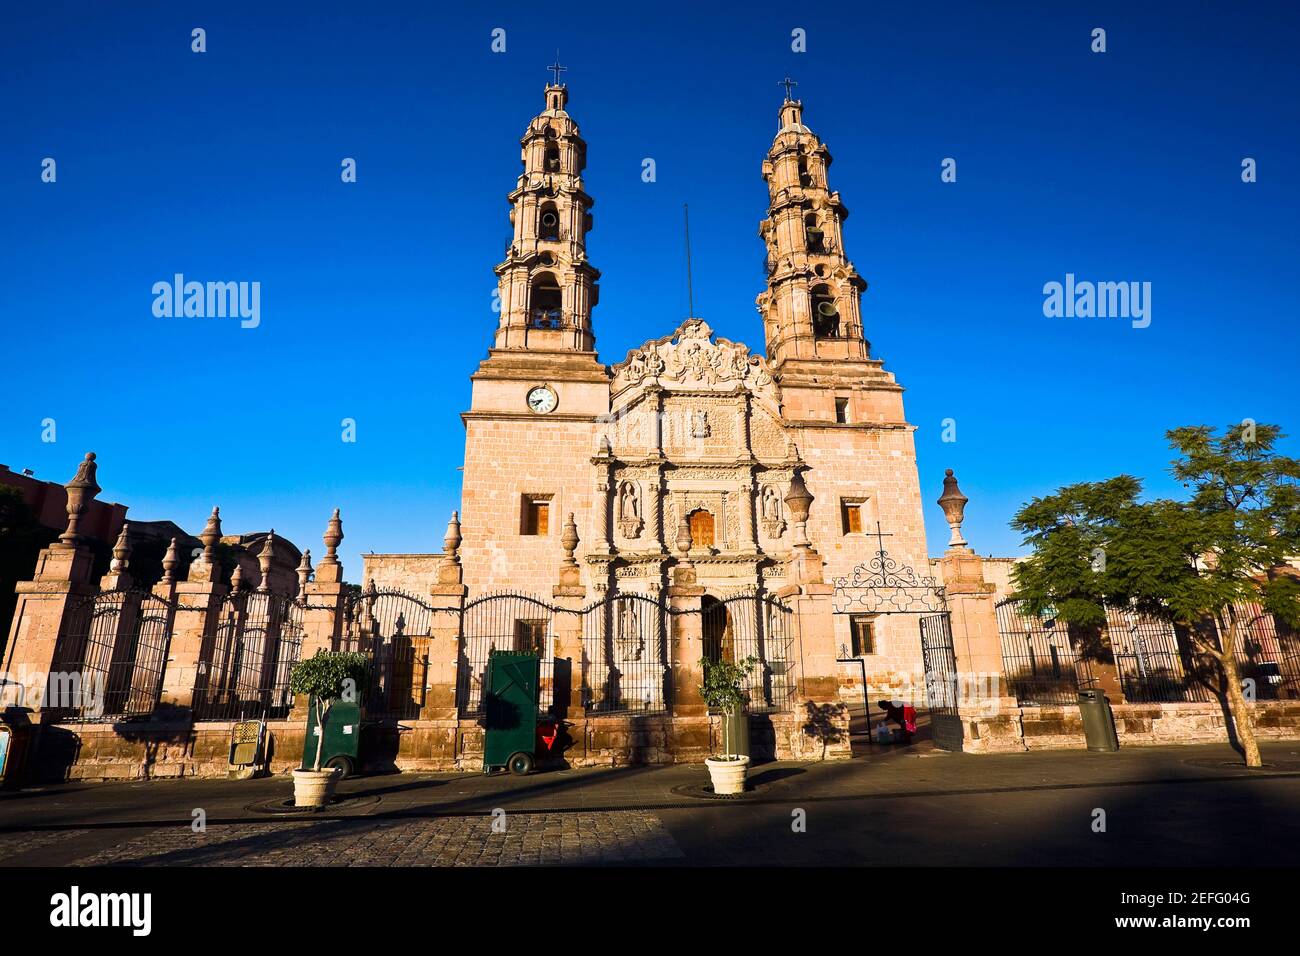 Facade of a cathedral, Catedral De Aguascalientes, Aguascalientes, Mexico Stock Photo